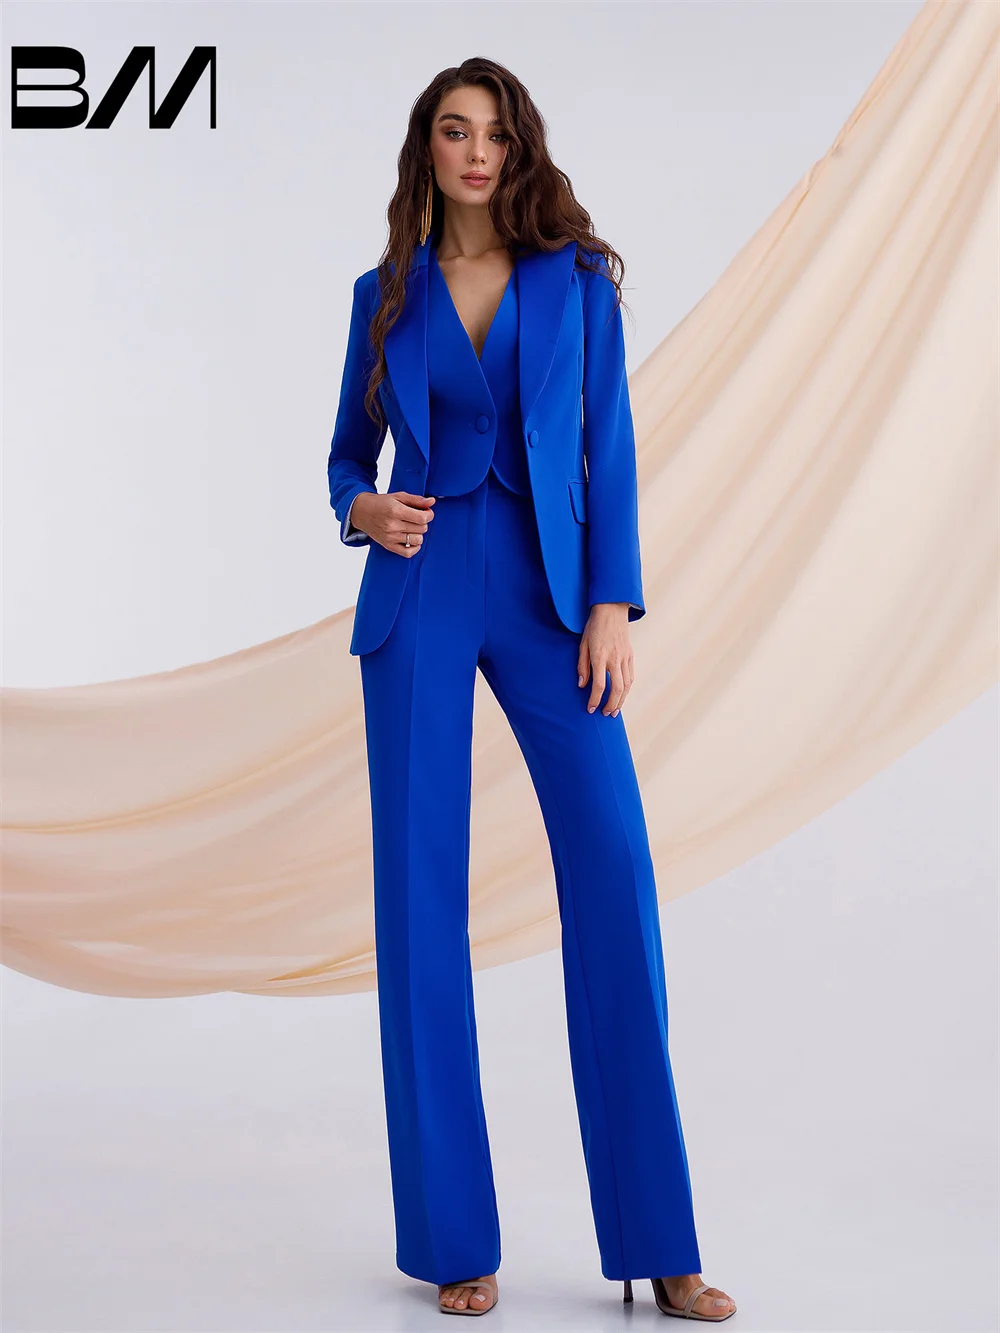 Klasyczne damskie formalne garnitury biznesowe eleganckie biurowe damskie garnitury ze spodniami smoking ślubny marynarka kostium Femme biurowa odzież robocza